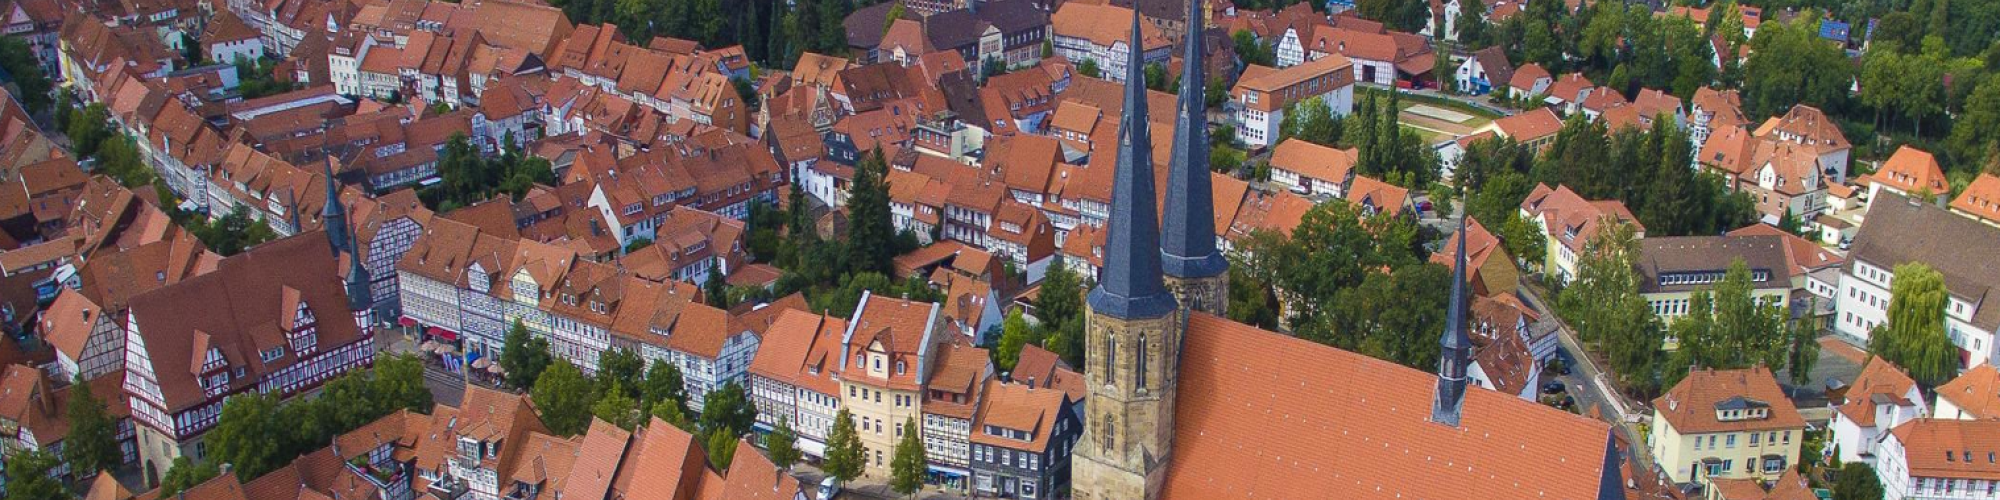 Stadt Duderstadt